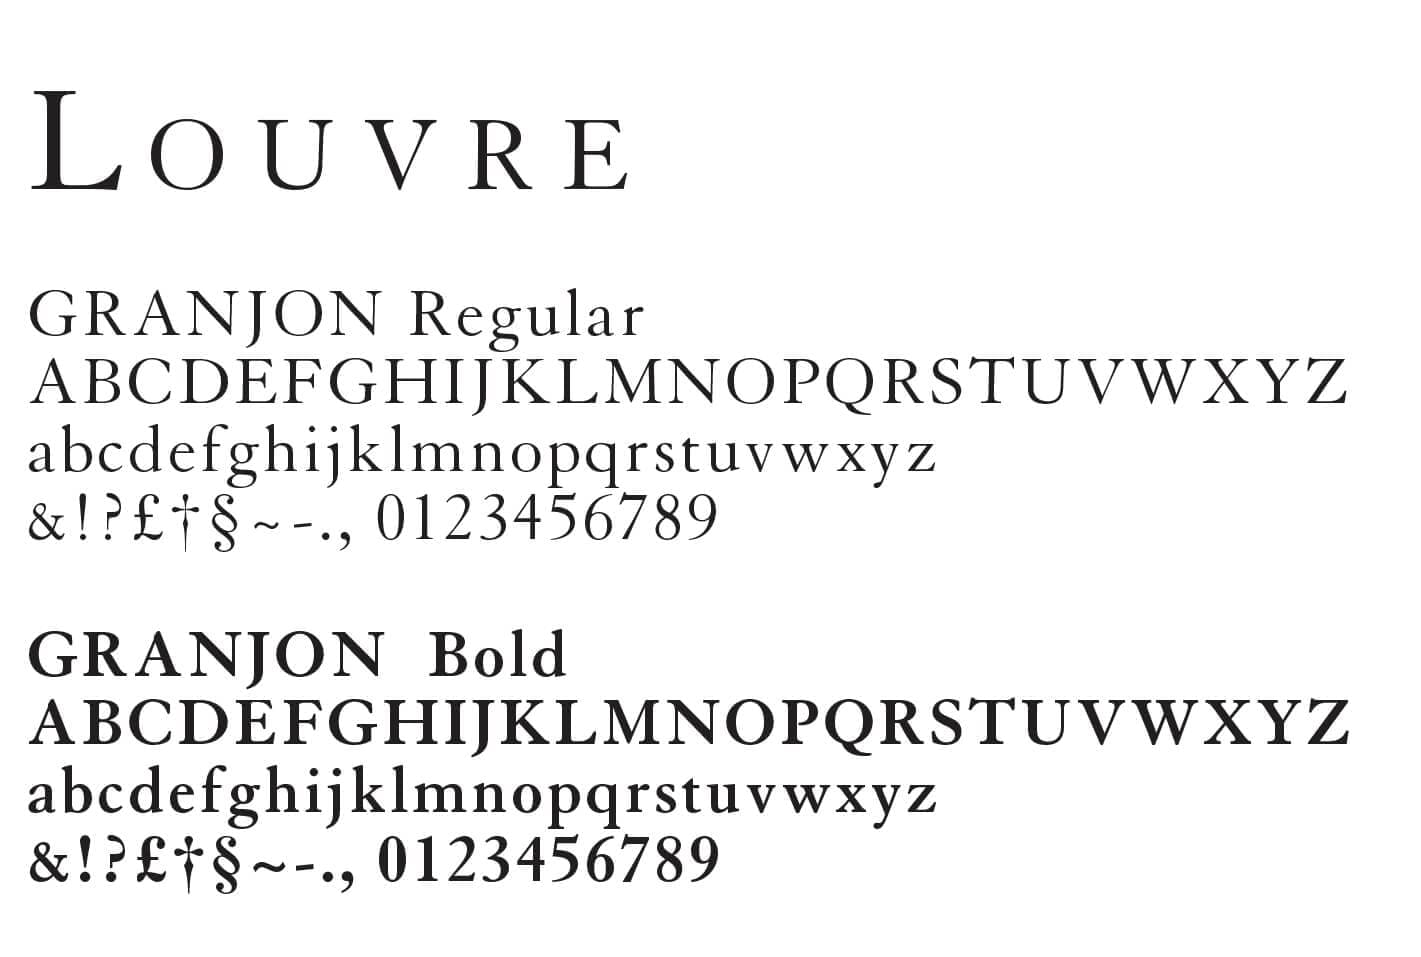 Typographie Granjon utilisé pour le Louvre Abu Dhabi dans une identité pensée par ichetkar.